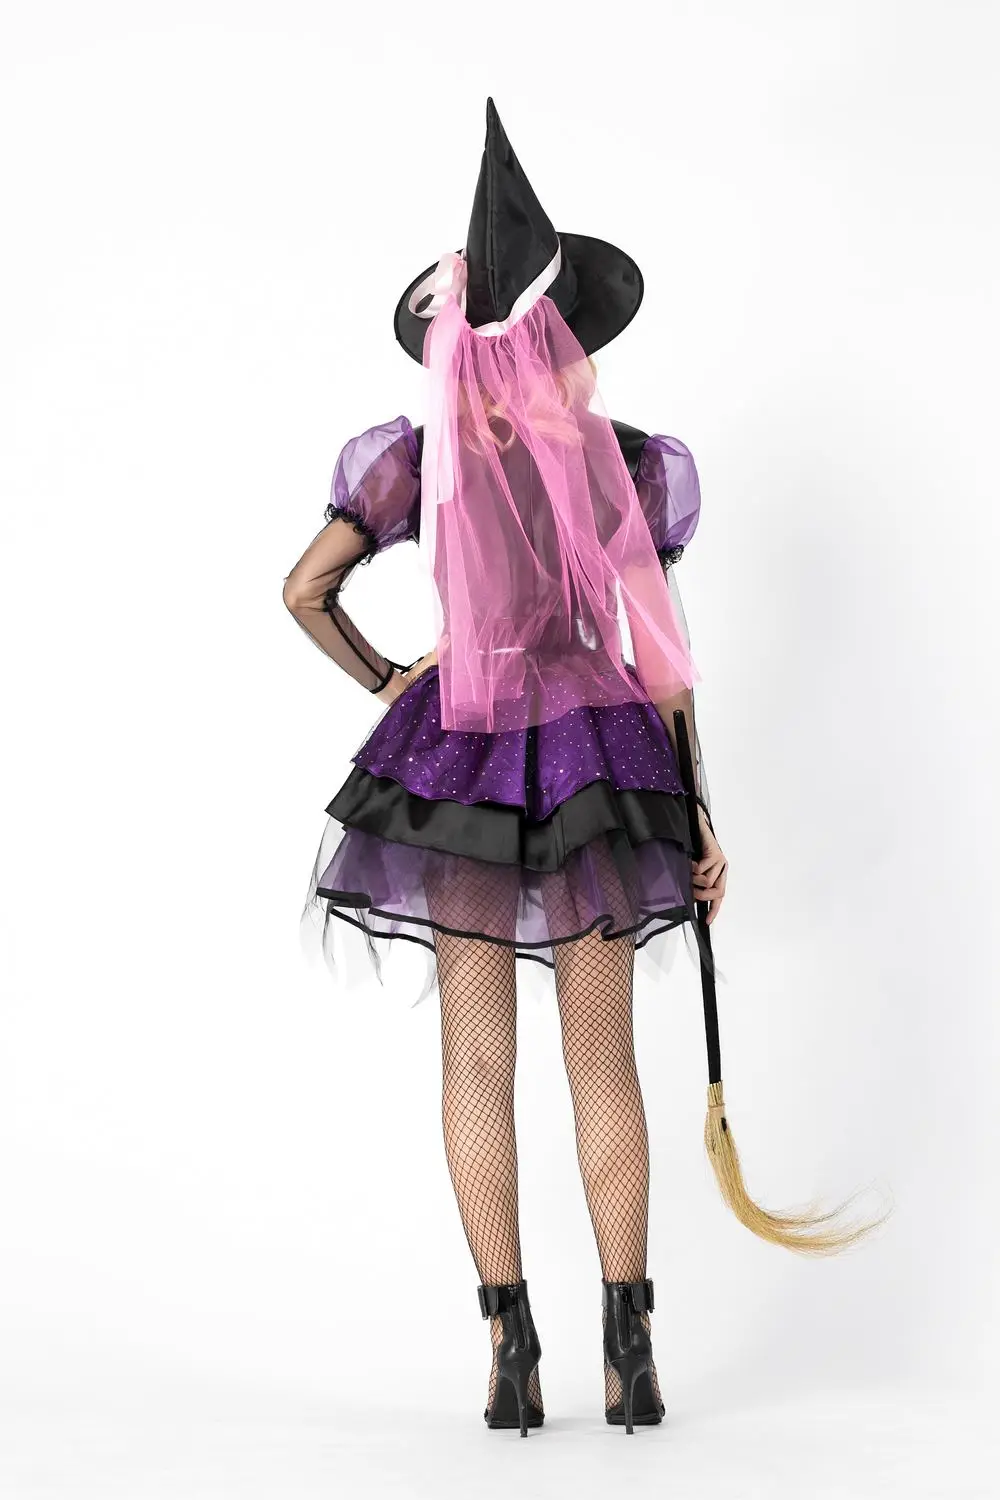 Костюм ведьмы, вечерние костюмы ведьмы на Хэллоуин, женский сексуальный костюм ведьмы с хвостом, брекеты для выступлений, нарядное платье, шляпа